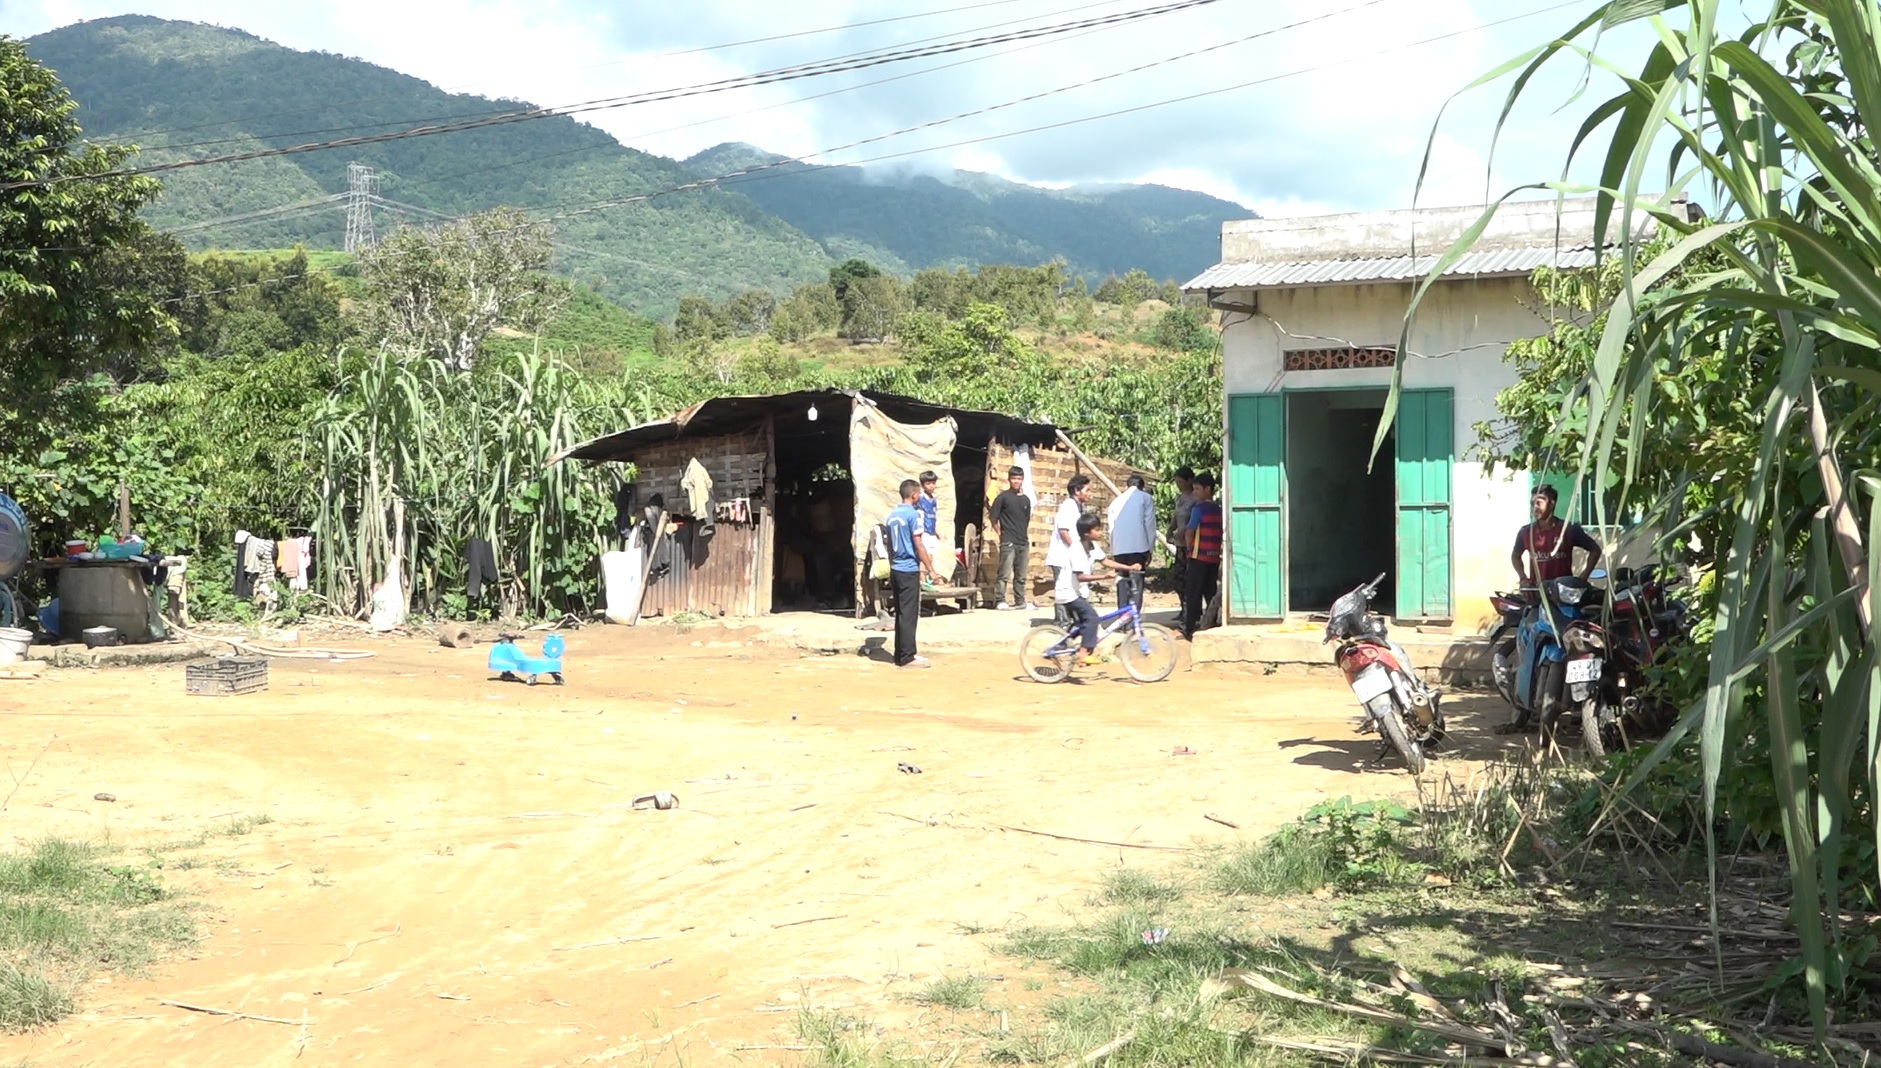 Giảm nghèo ở Lâm Đồng: Hỗ trợ cung cấp nước sạch, đất ở cho hàng ngàn người dân khó khăn - Ảnh 1.